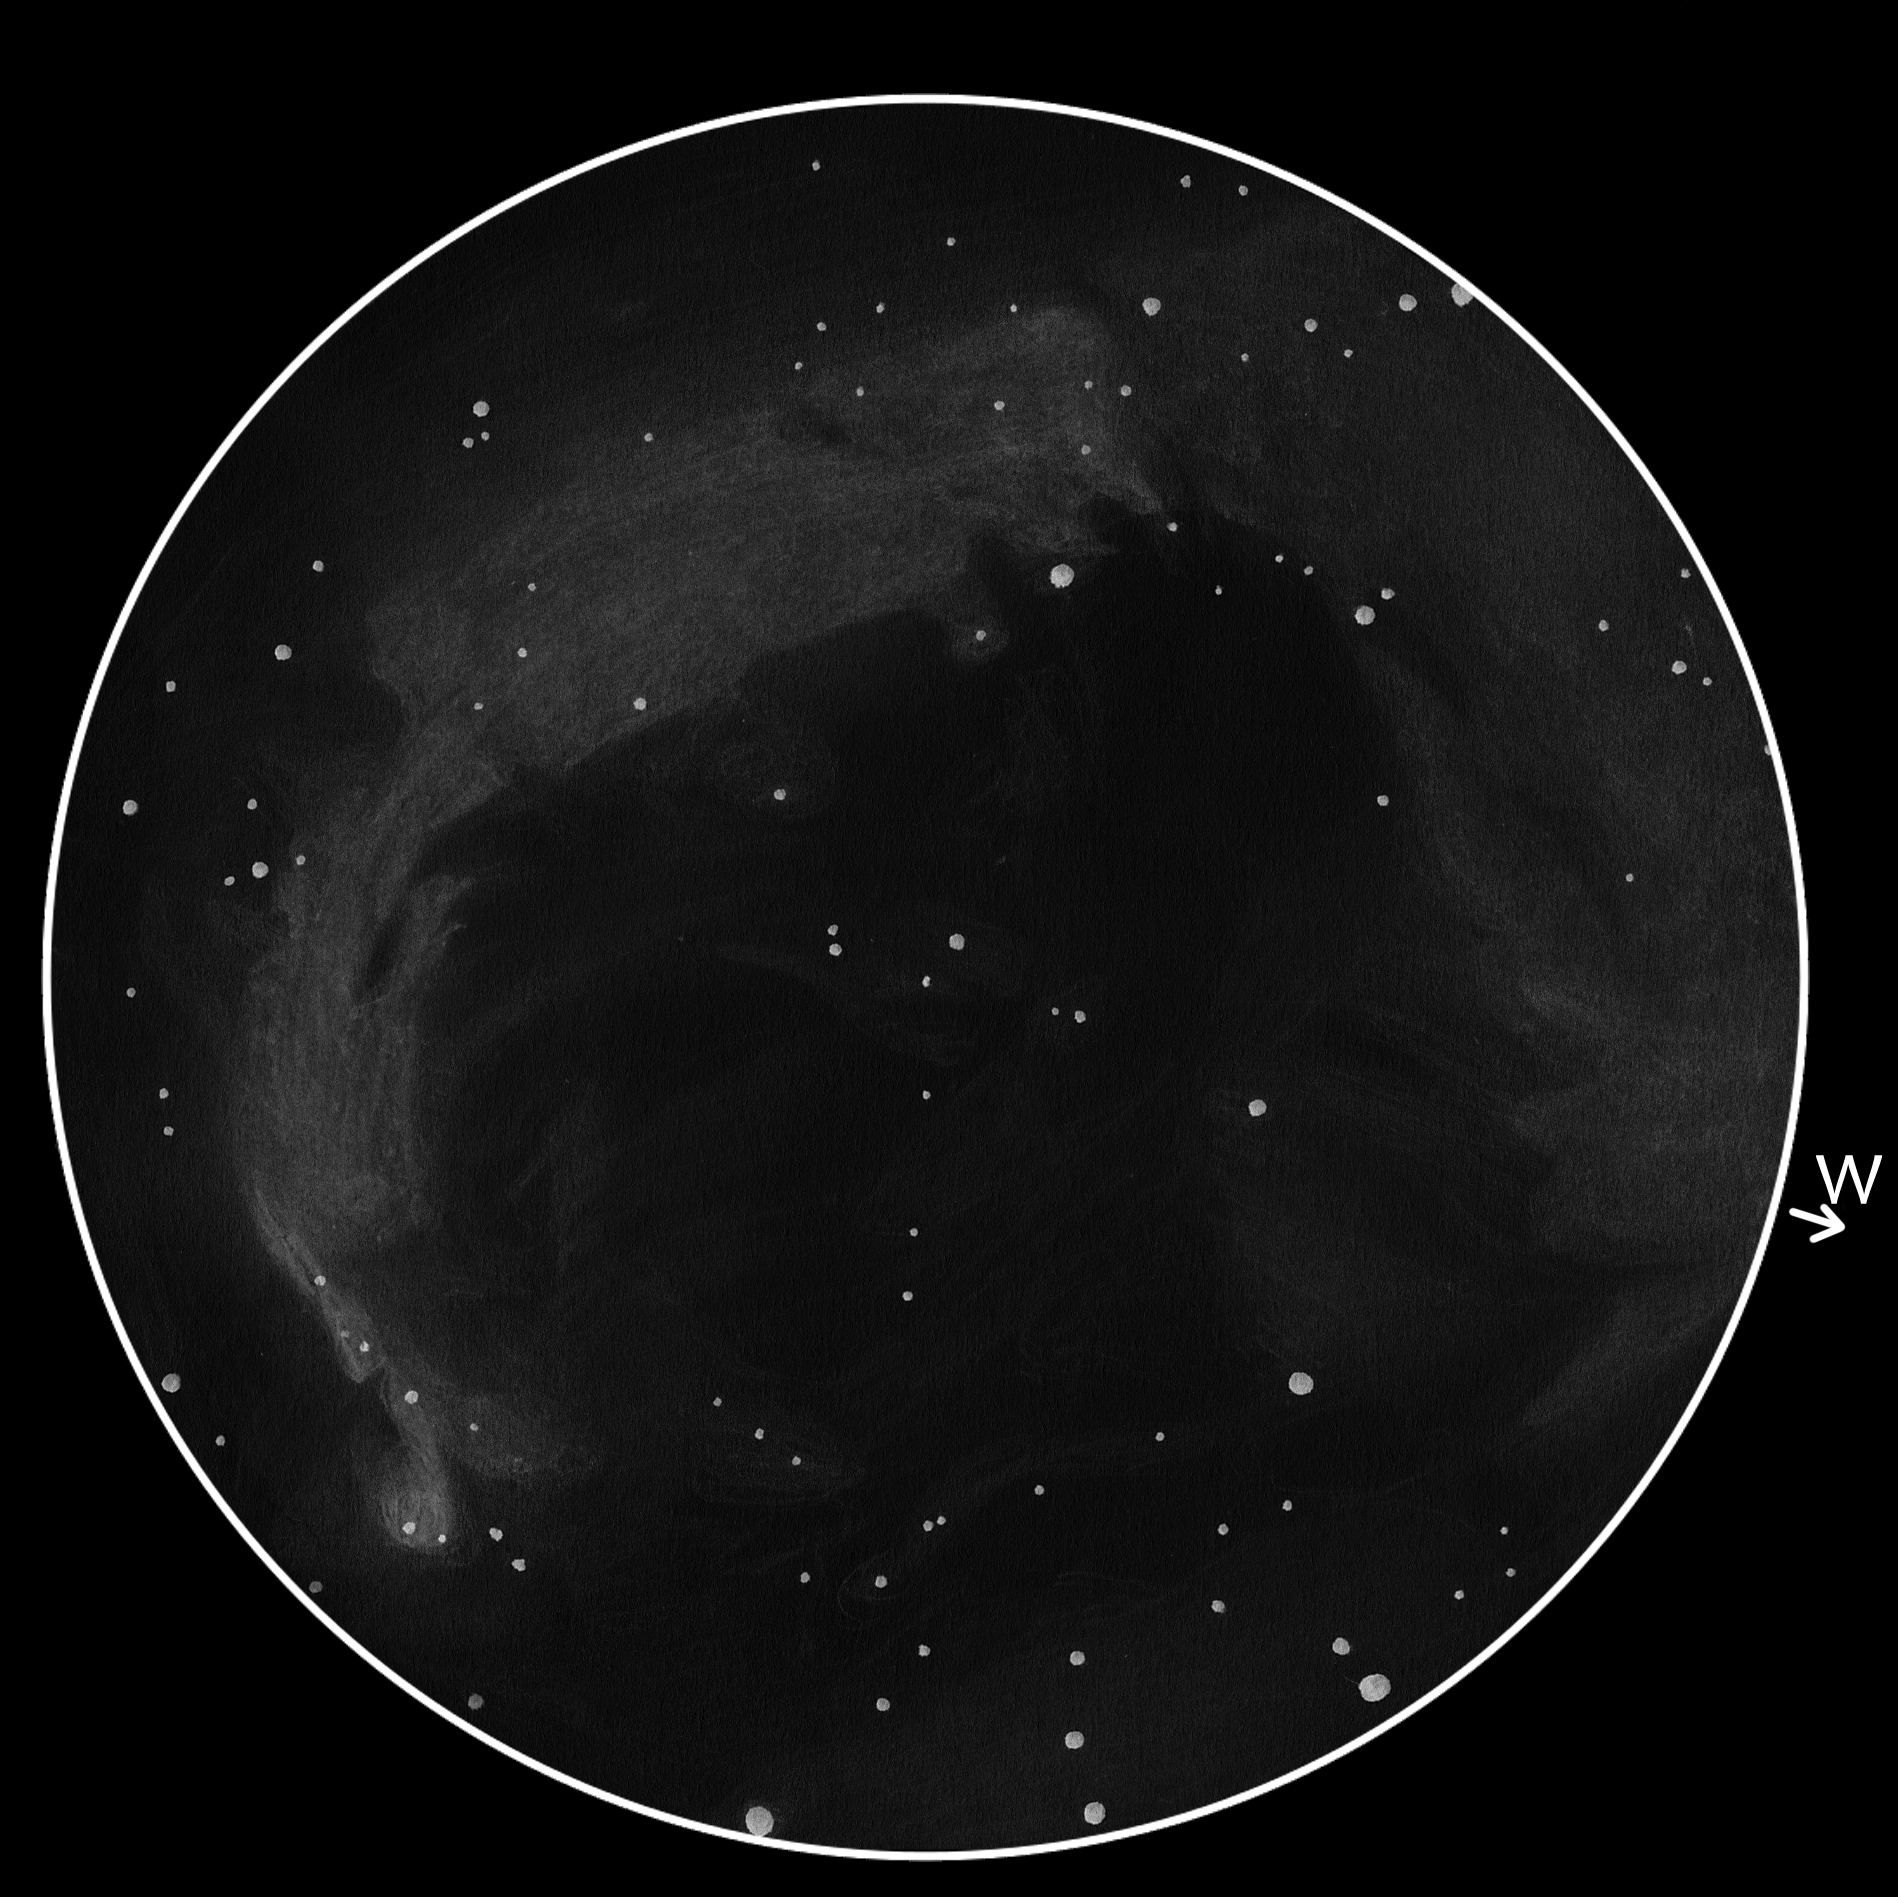 LDN 935 SK, NGC 7000 DF (Cyg)